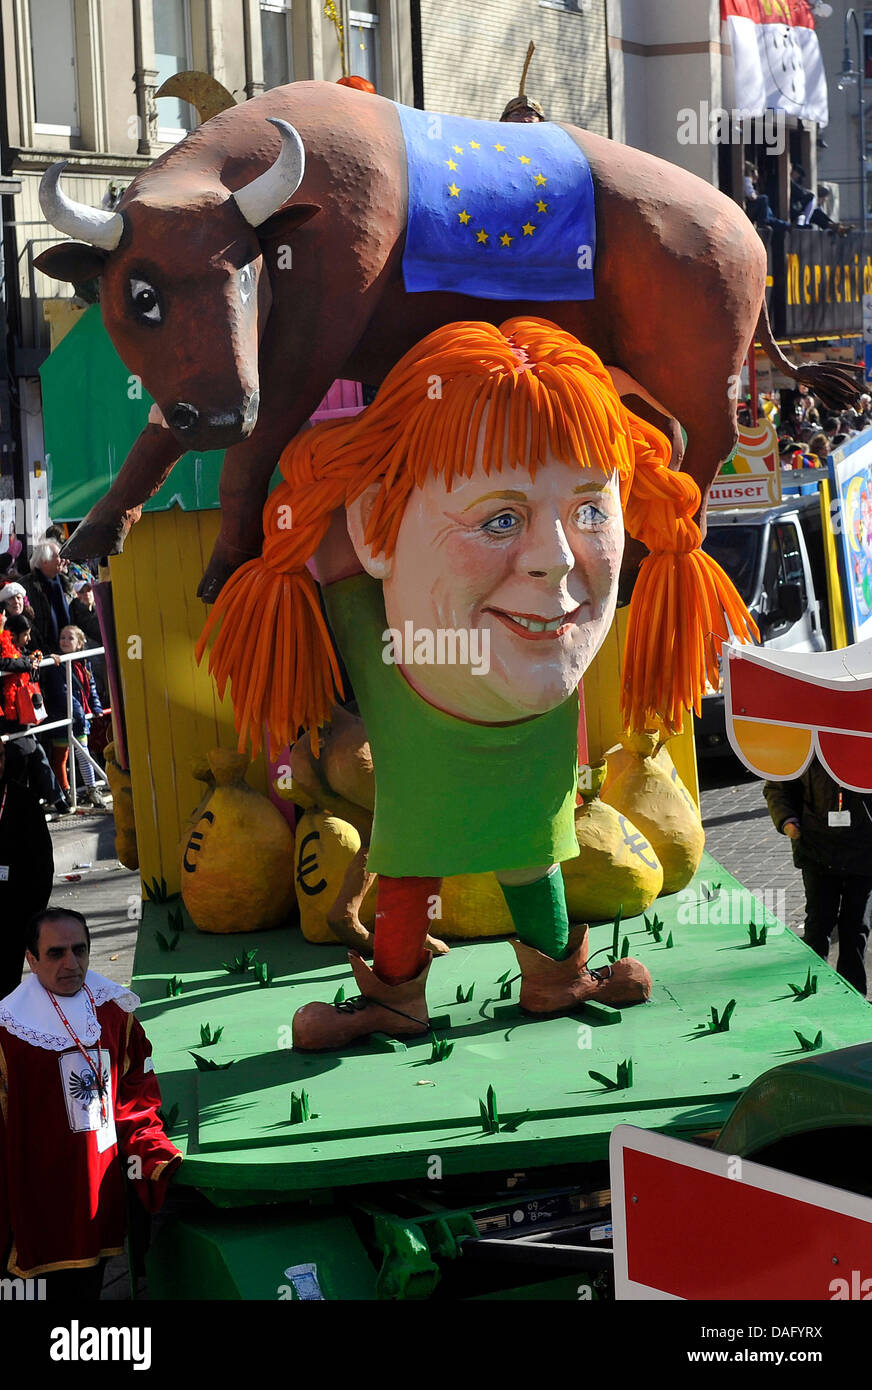 Un galleggiante di Angela Merkel come l'UE Pipi calzelunghe" durante il Martedì Grasso sfilata di lunedì a Colonia Germania, 07 marzo 2011. Foto: HENNING KAISER Foto Stock